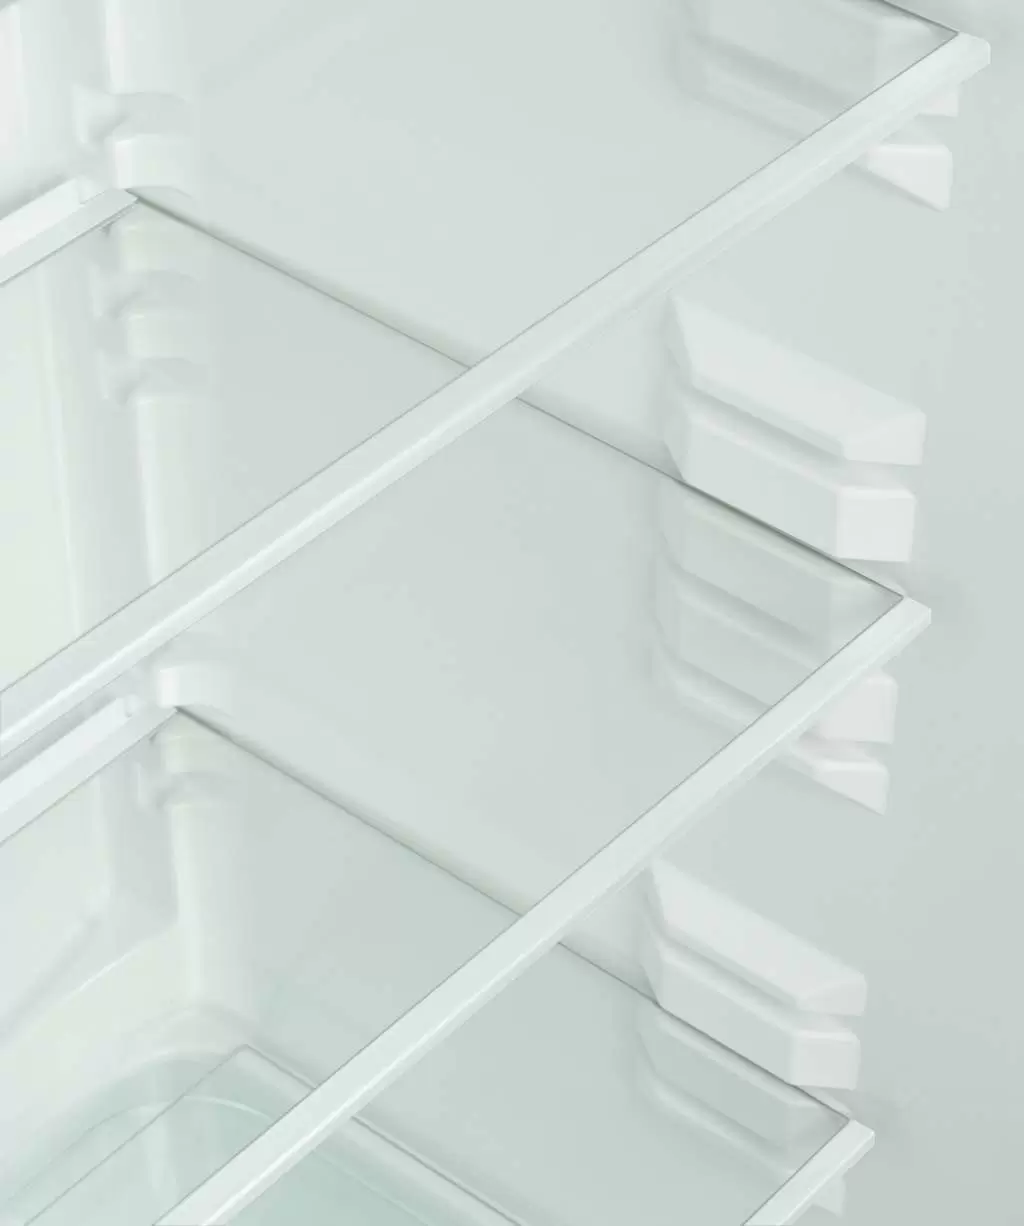 Холодильник Snaige RF53SM-S5JJ2E, черный